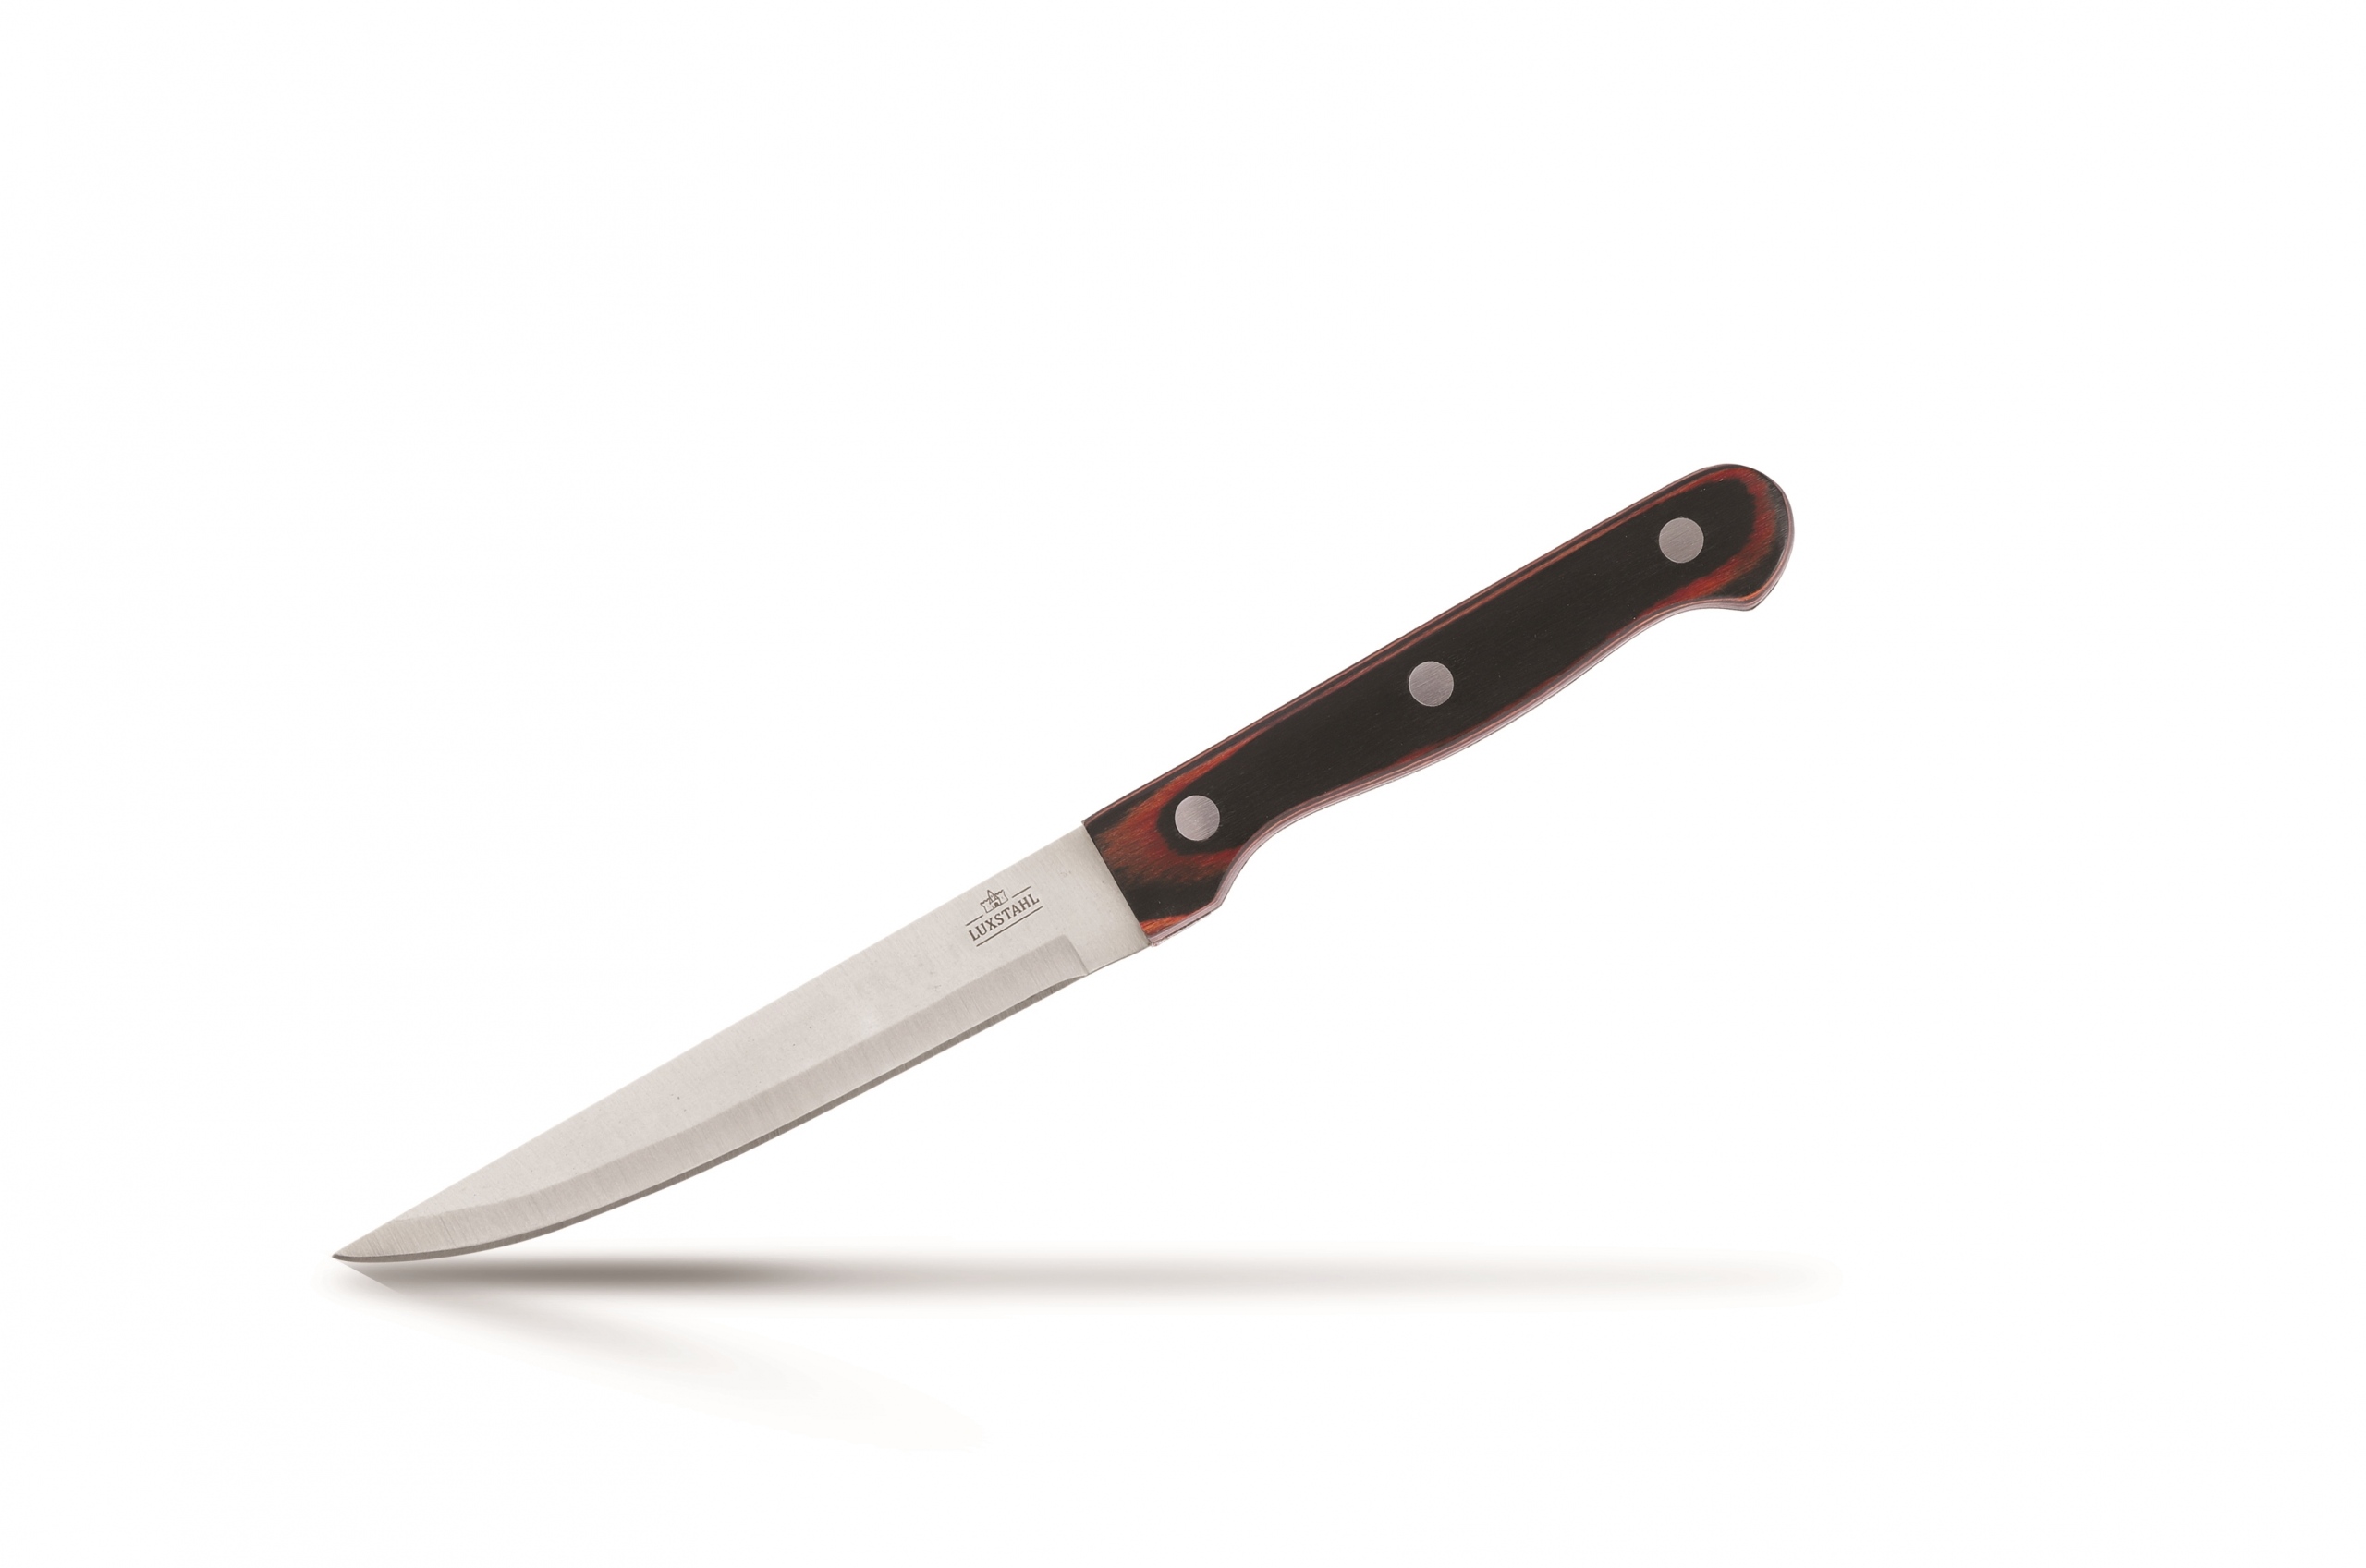 Нож для овощей 115 мм Redwood Luxstahl